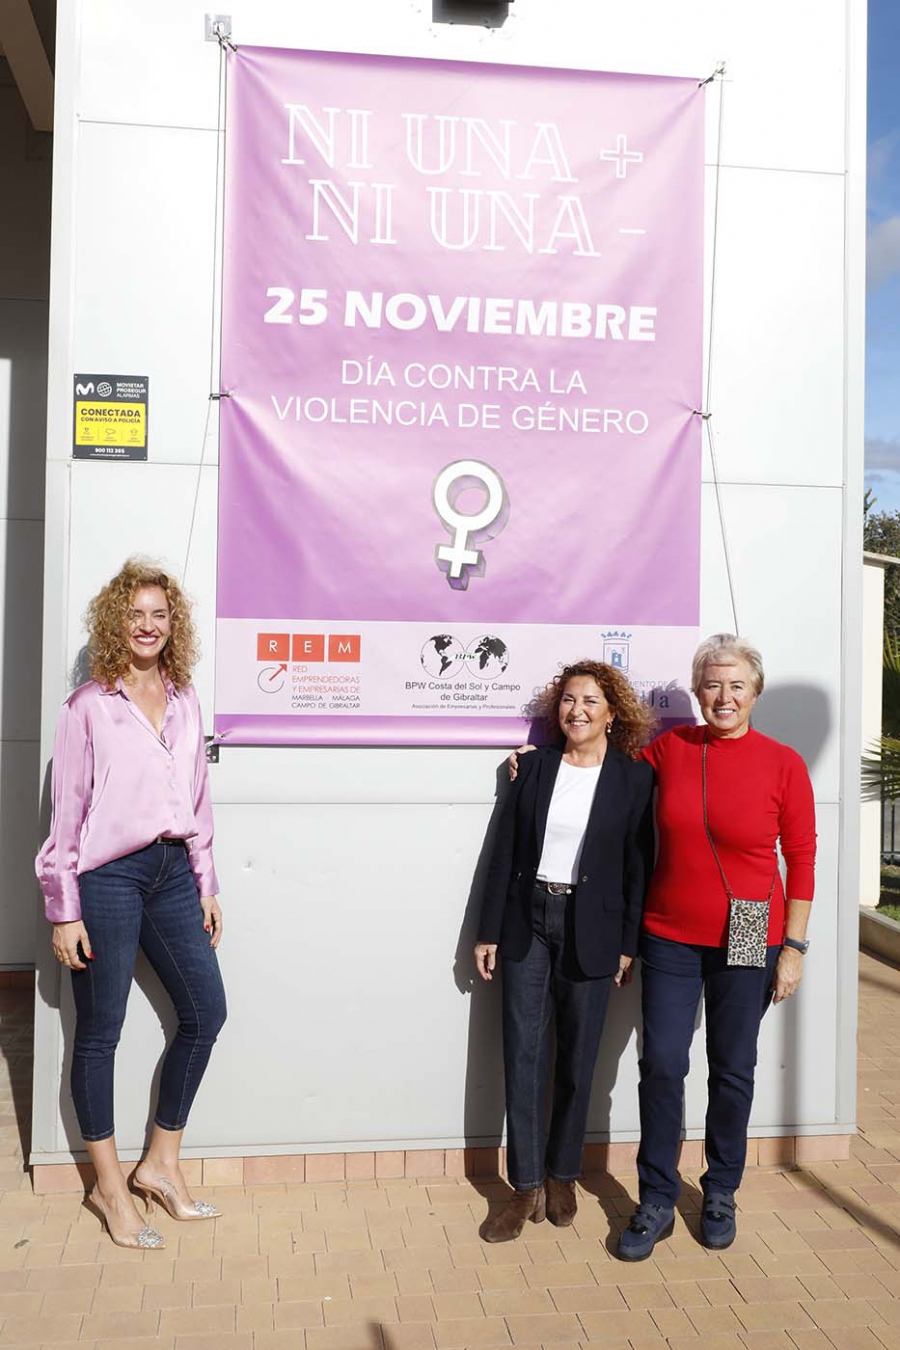 La Red de Emprendedoras de Marbella se suma a los actos conmemorativos del 25N e instala en su sede una pancarta para concienciar contra la violencia hacia las mujeres